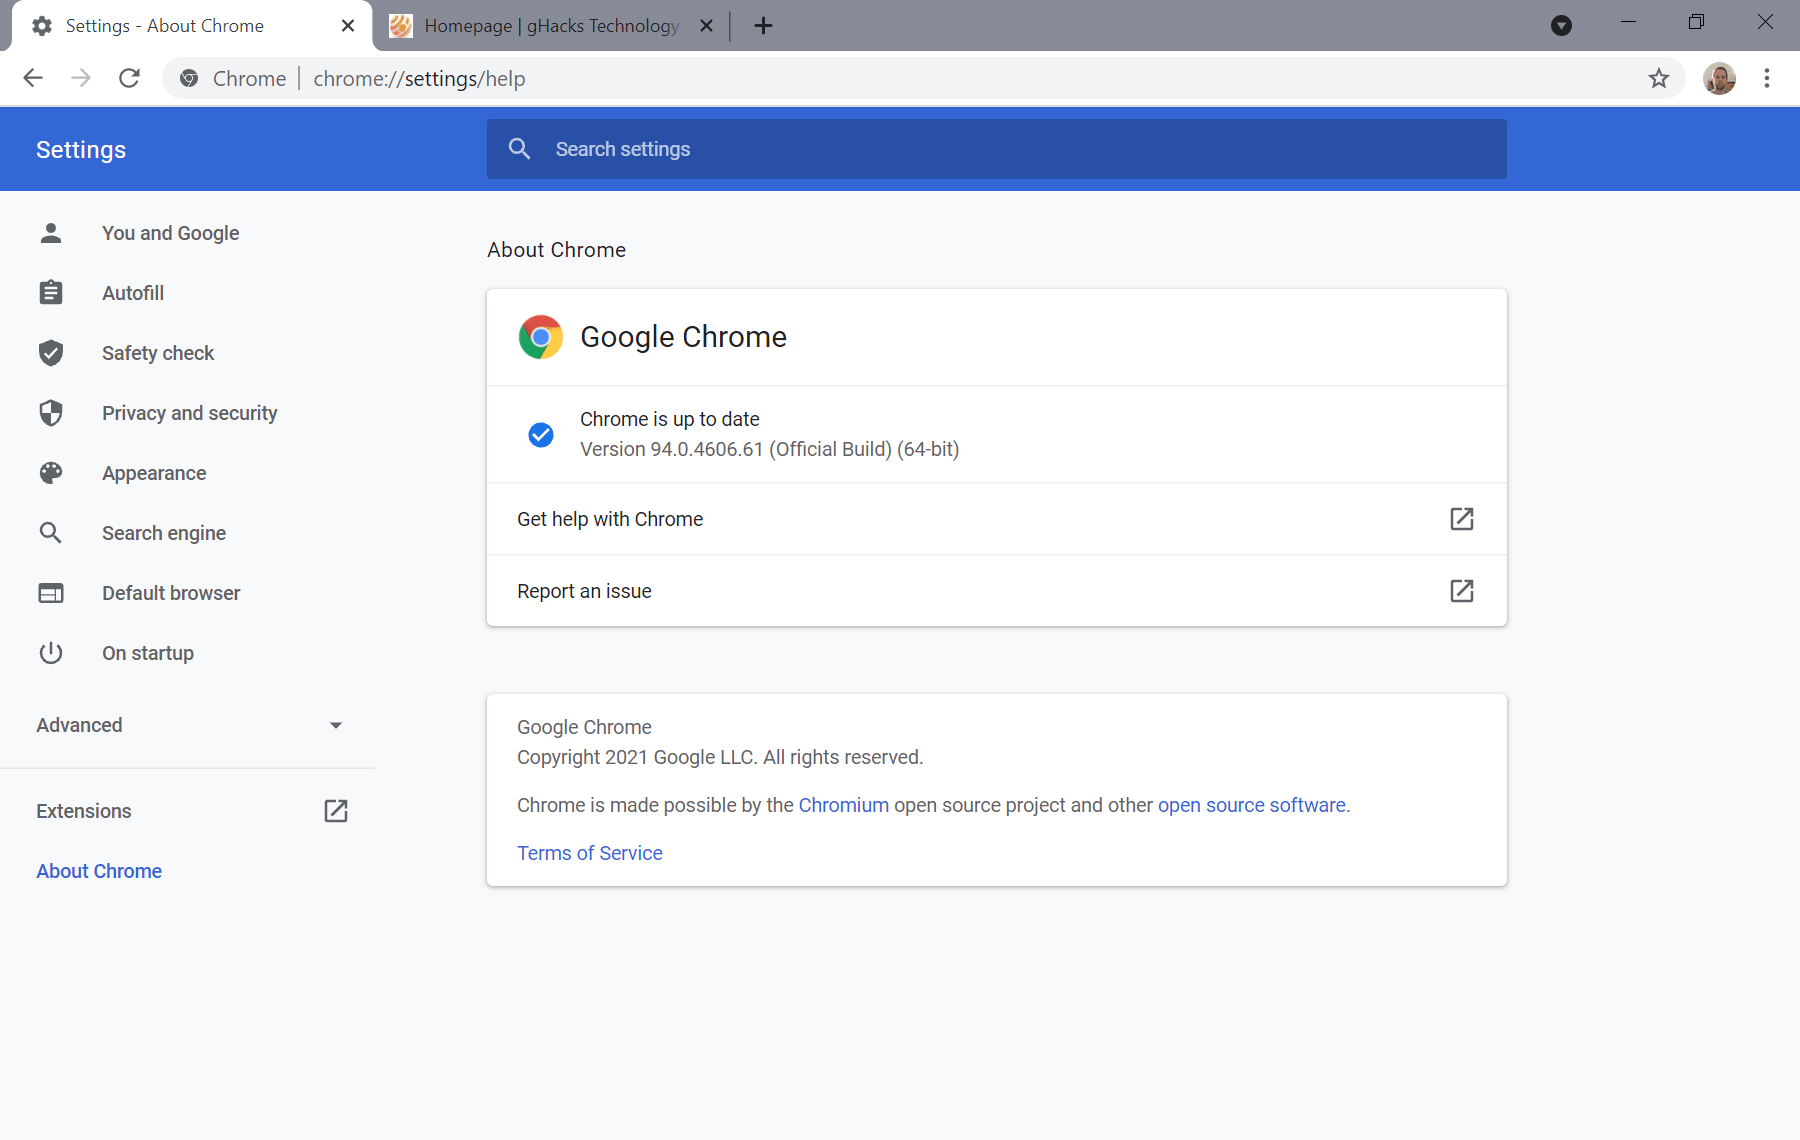 patch di sicurezza google chrome 94.0.4606.61